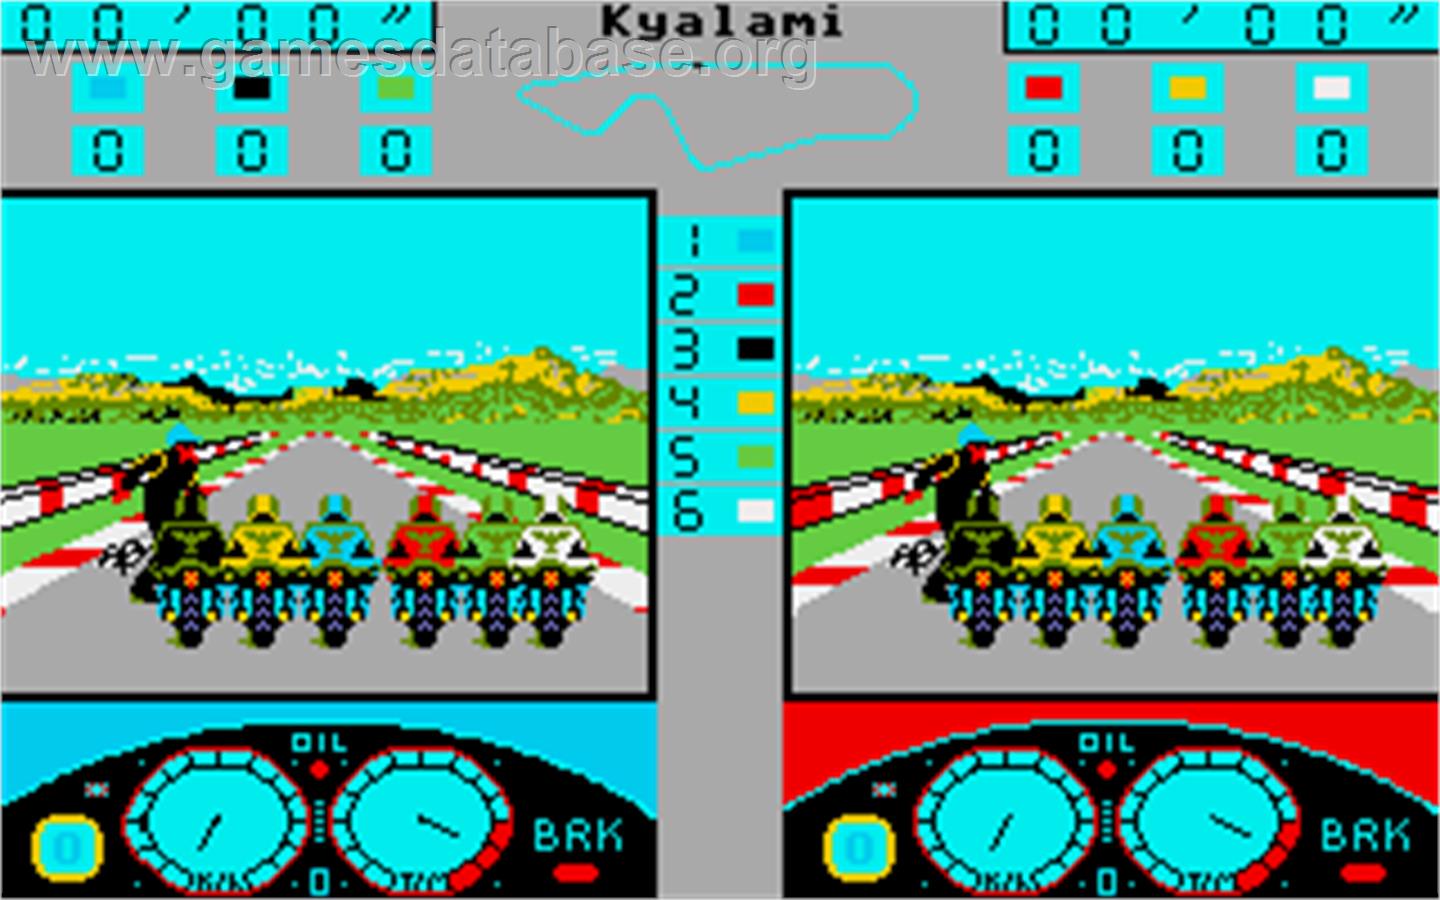 Grand Prix Master - Atari ST - Artwork - In Game